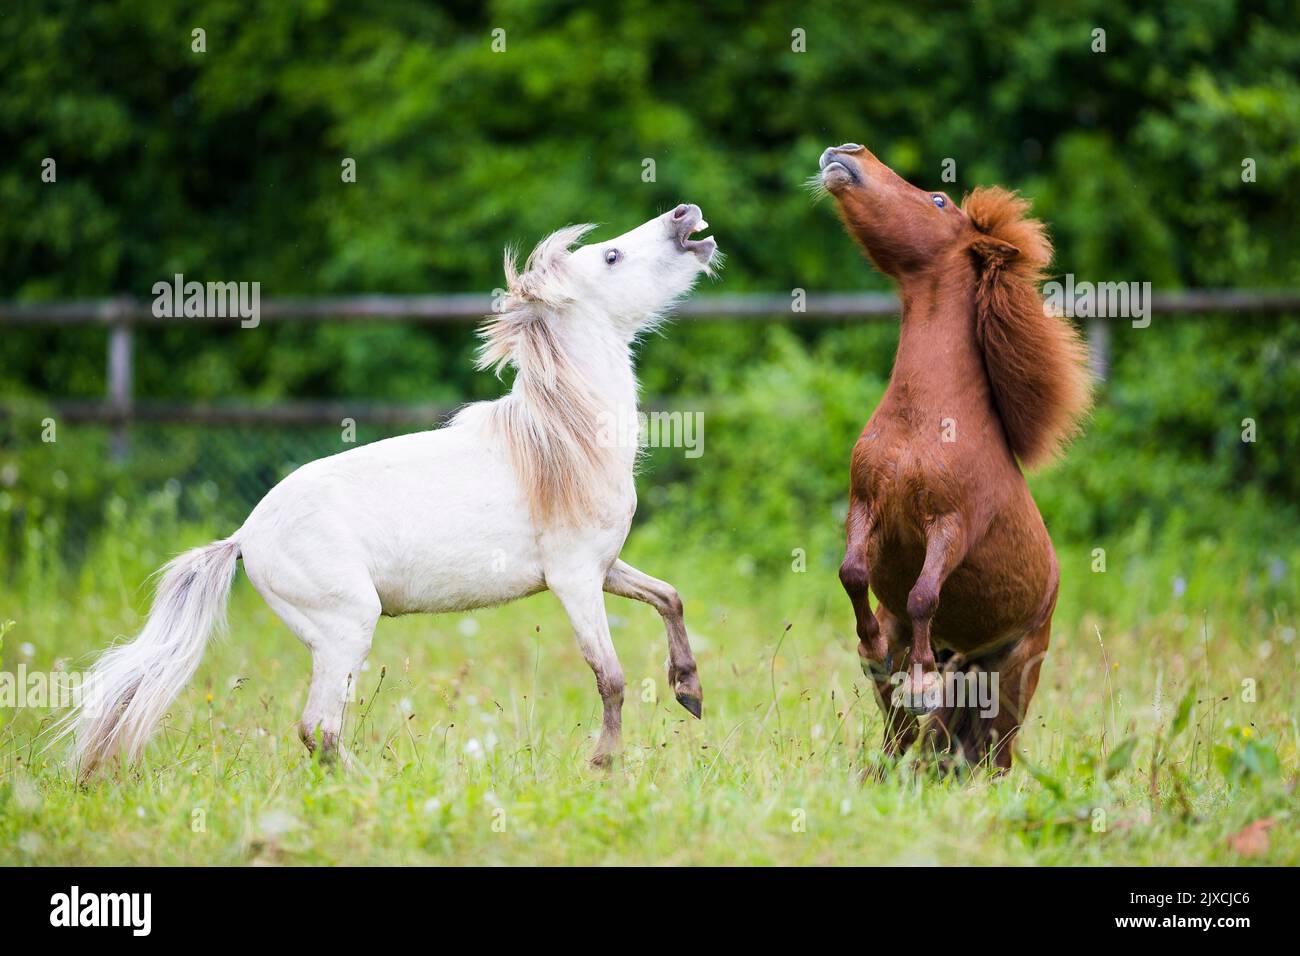 American de caballos en miniatura en miniatura y Shetland Pony. Dos jóvenes stallion jugar combates en una pastura. Suiza Foto de stock